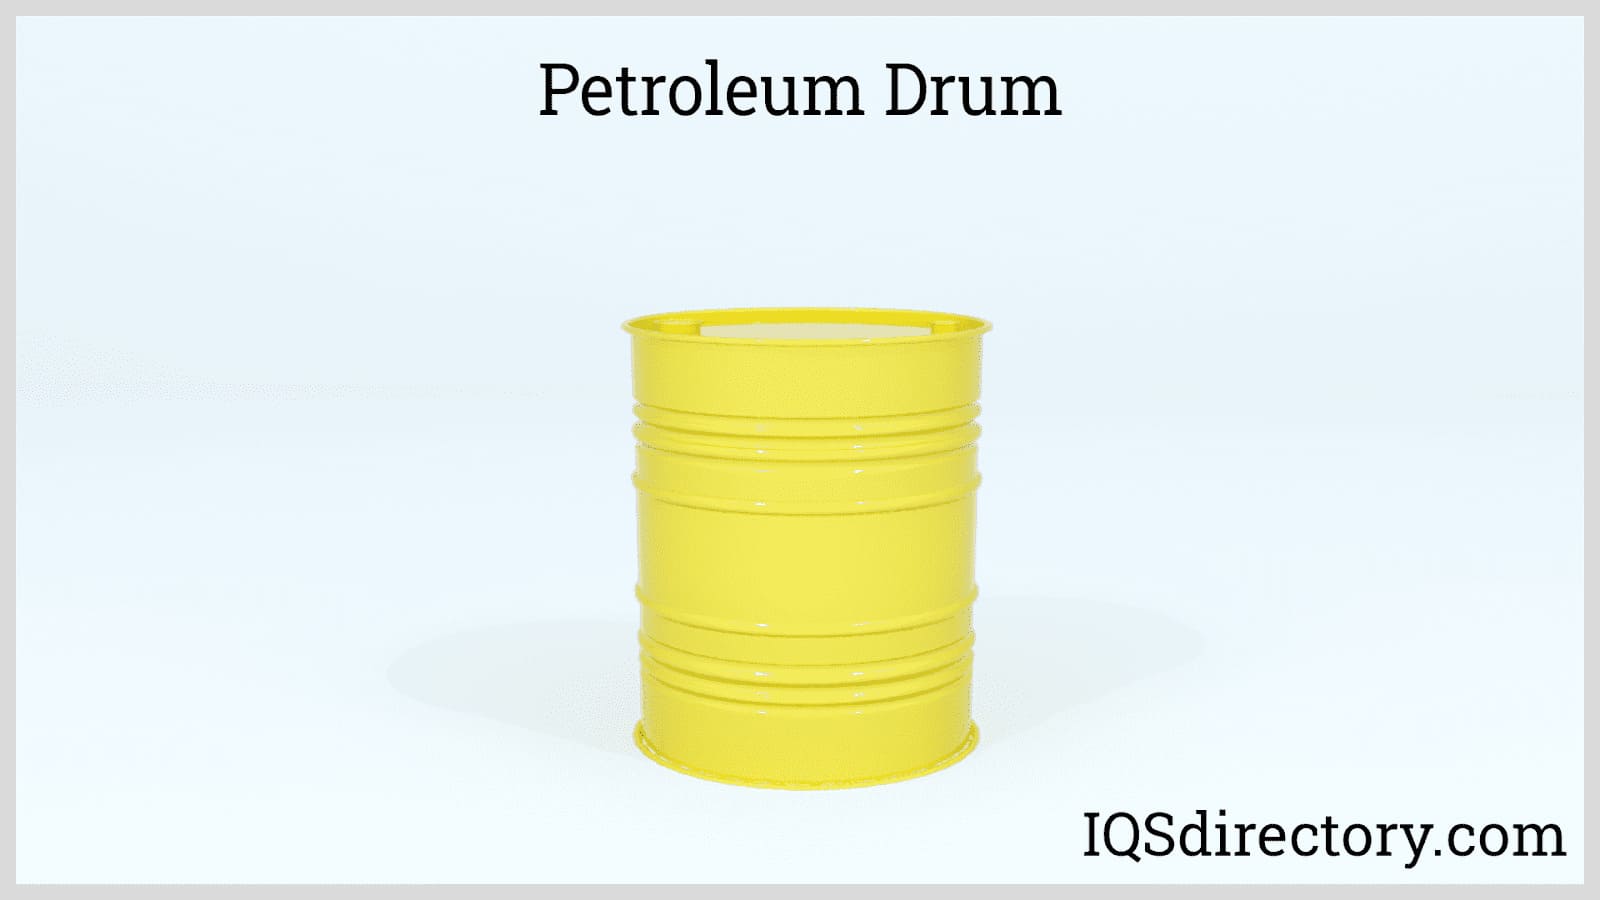 Petroleum Drum